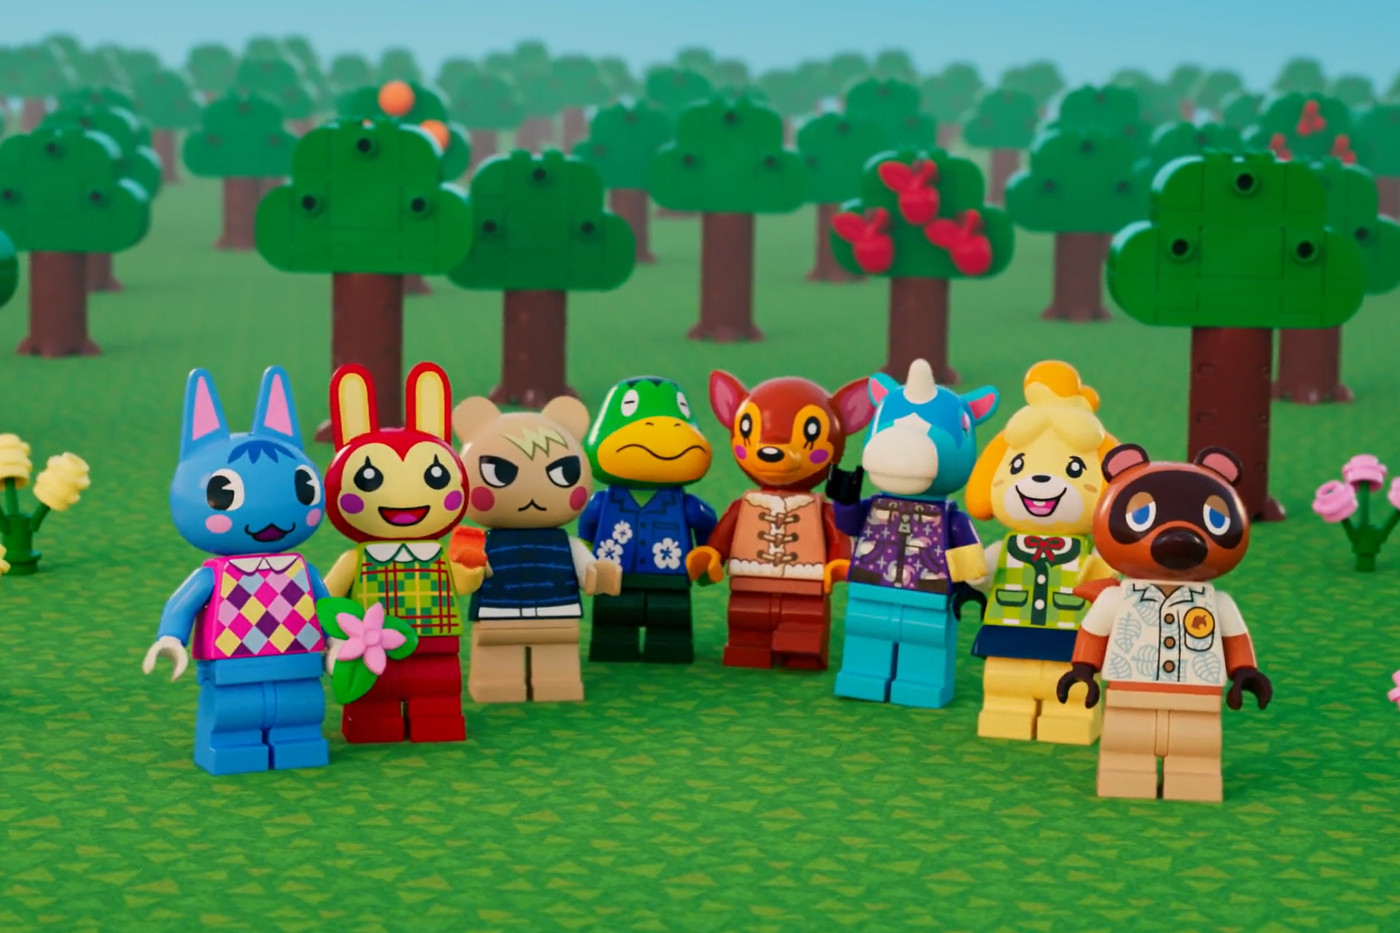 Lego mengungkap set Animal Crossing pertamanya, lengkap dengan Tom Nook